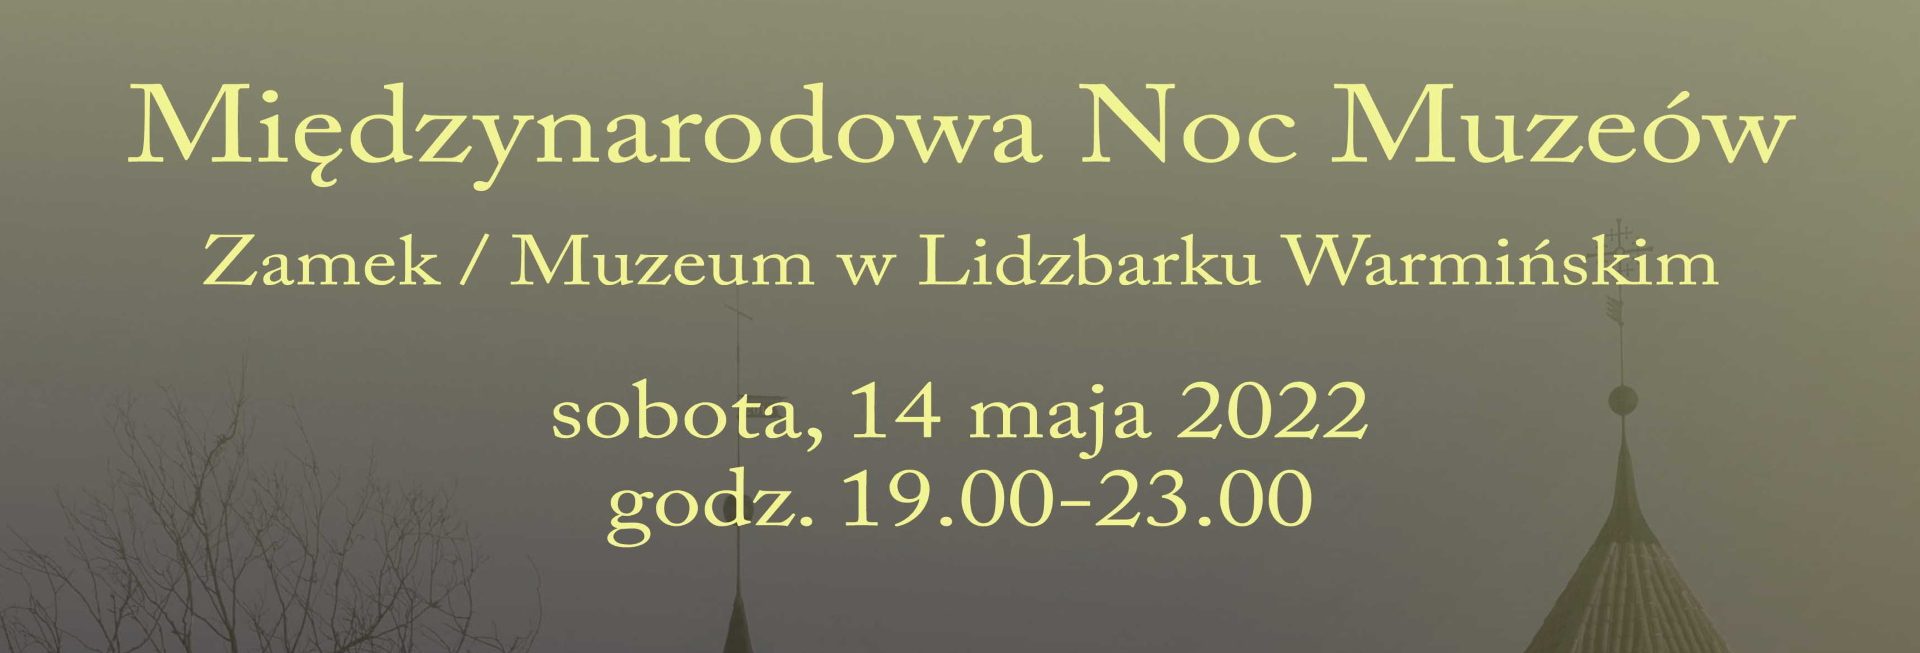 Plakat graficzny zapraszający do Lidzbarka Warmińskiego na Międzynarodową Noc Muzeów na Zamku w Lidzbarku Warmińskim.